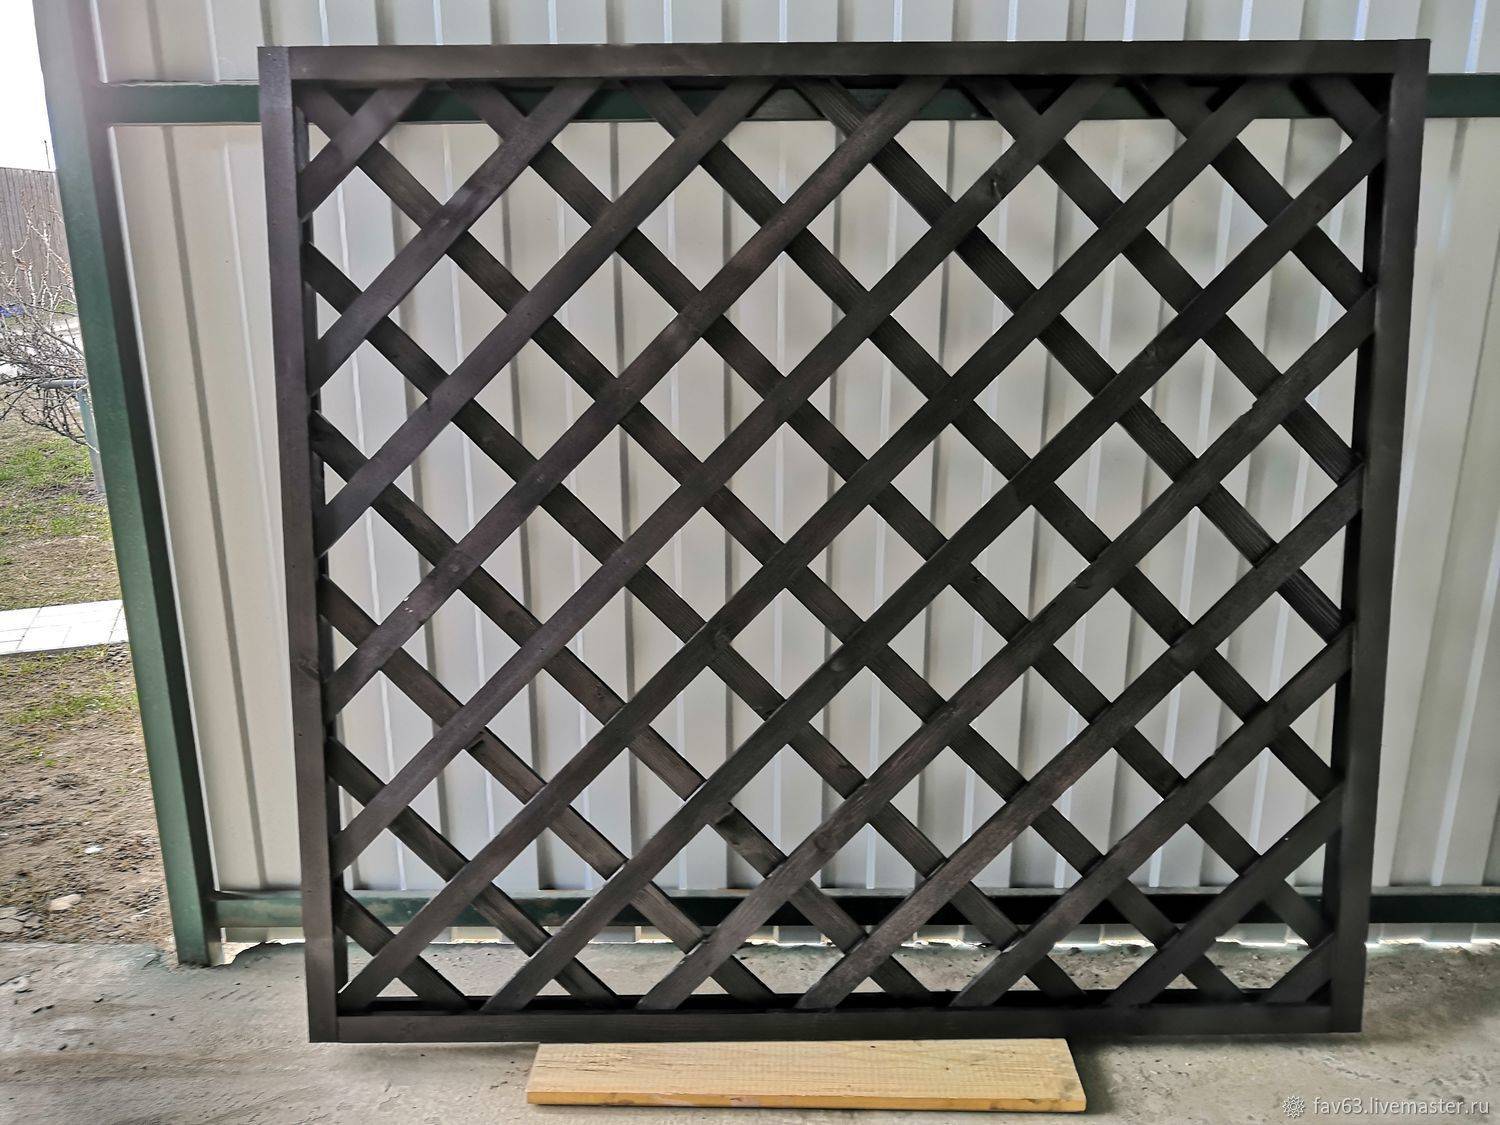 Забор решетка: пластиковый, металлический или деревянный